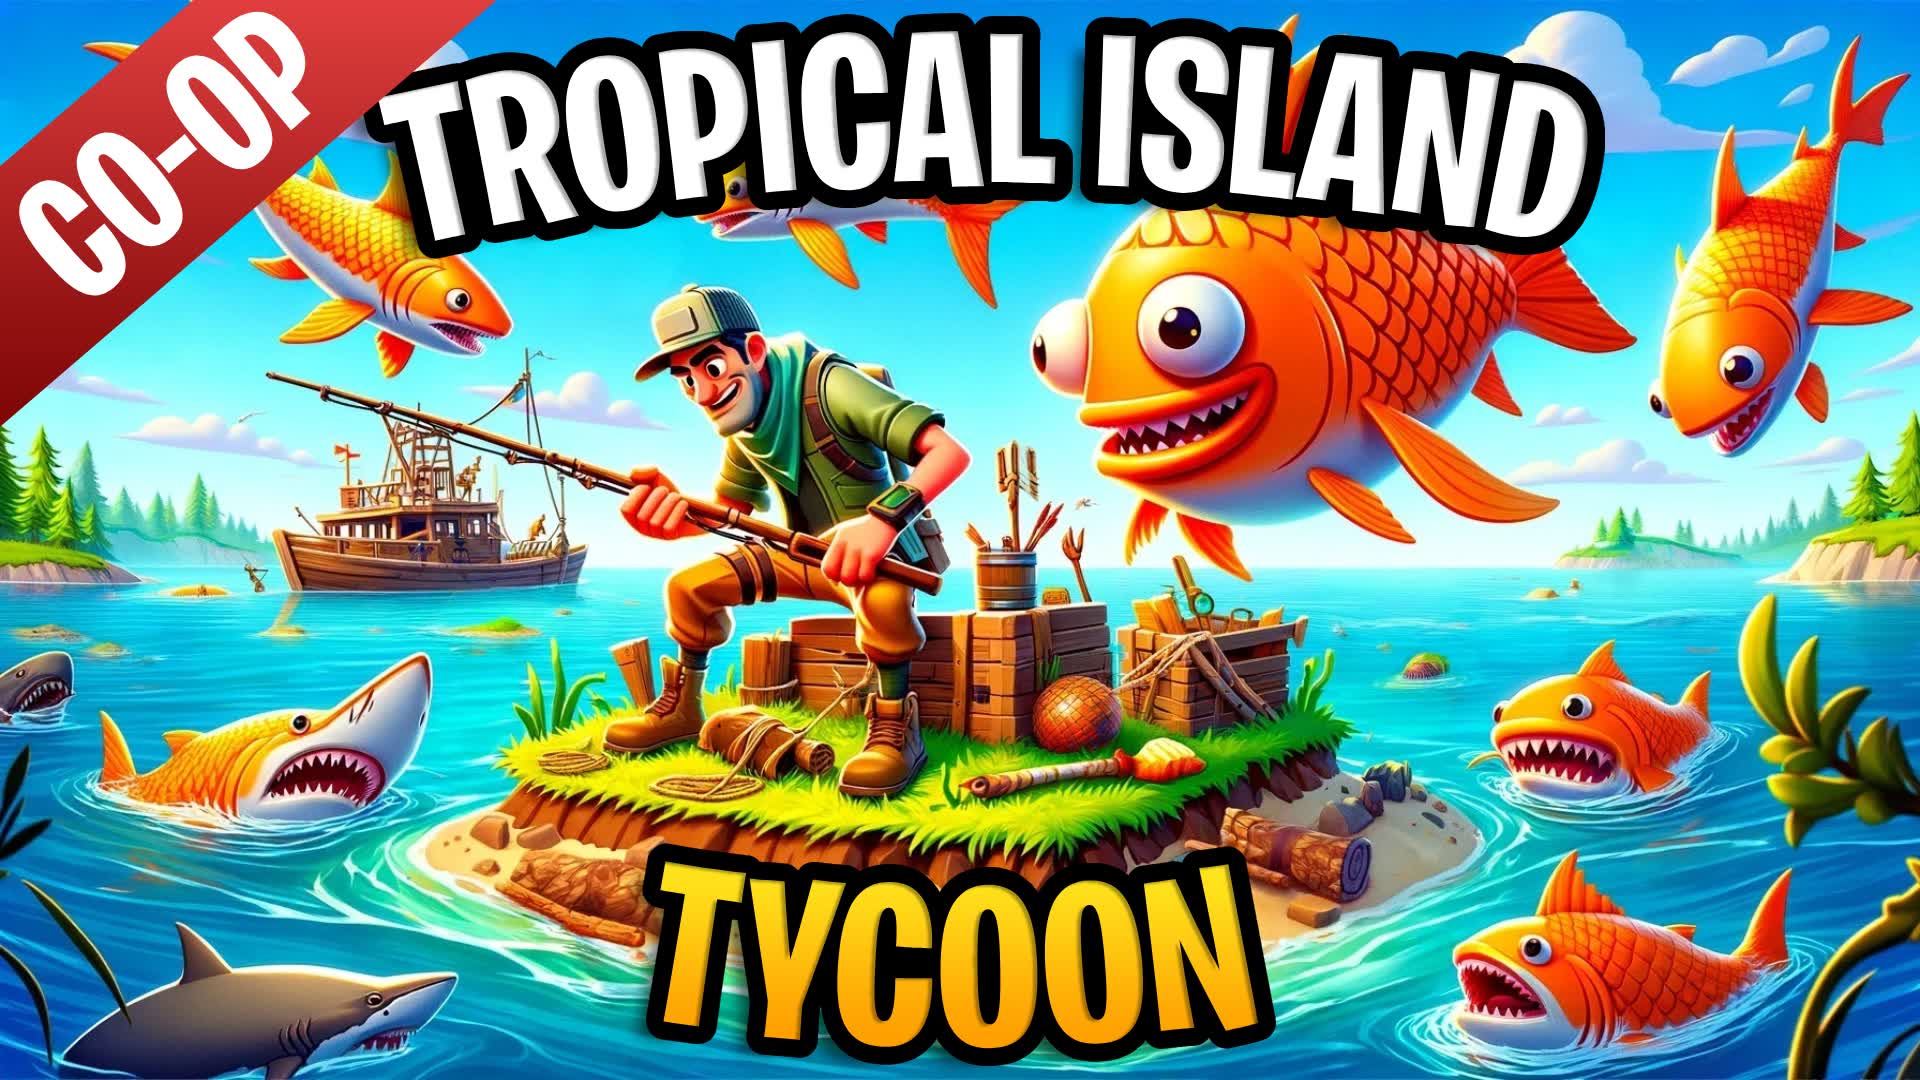 【注目の島】Tropical Island Tycoon [CO-OP]